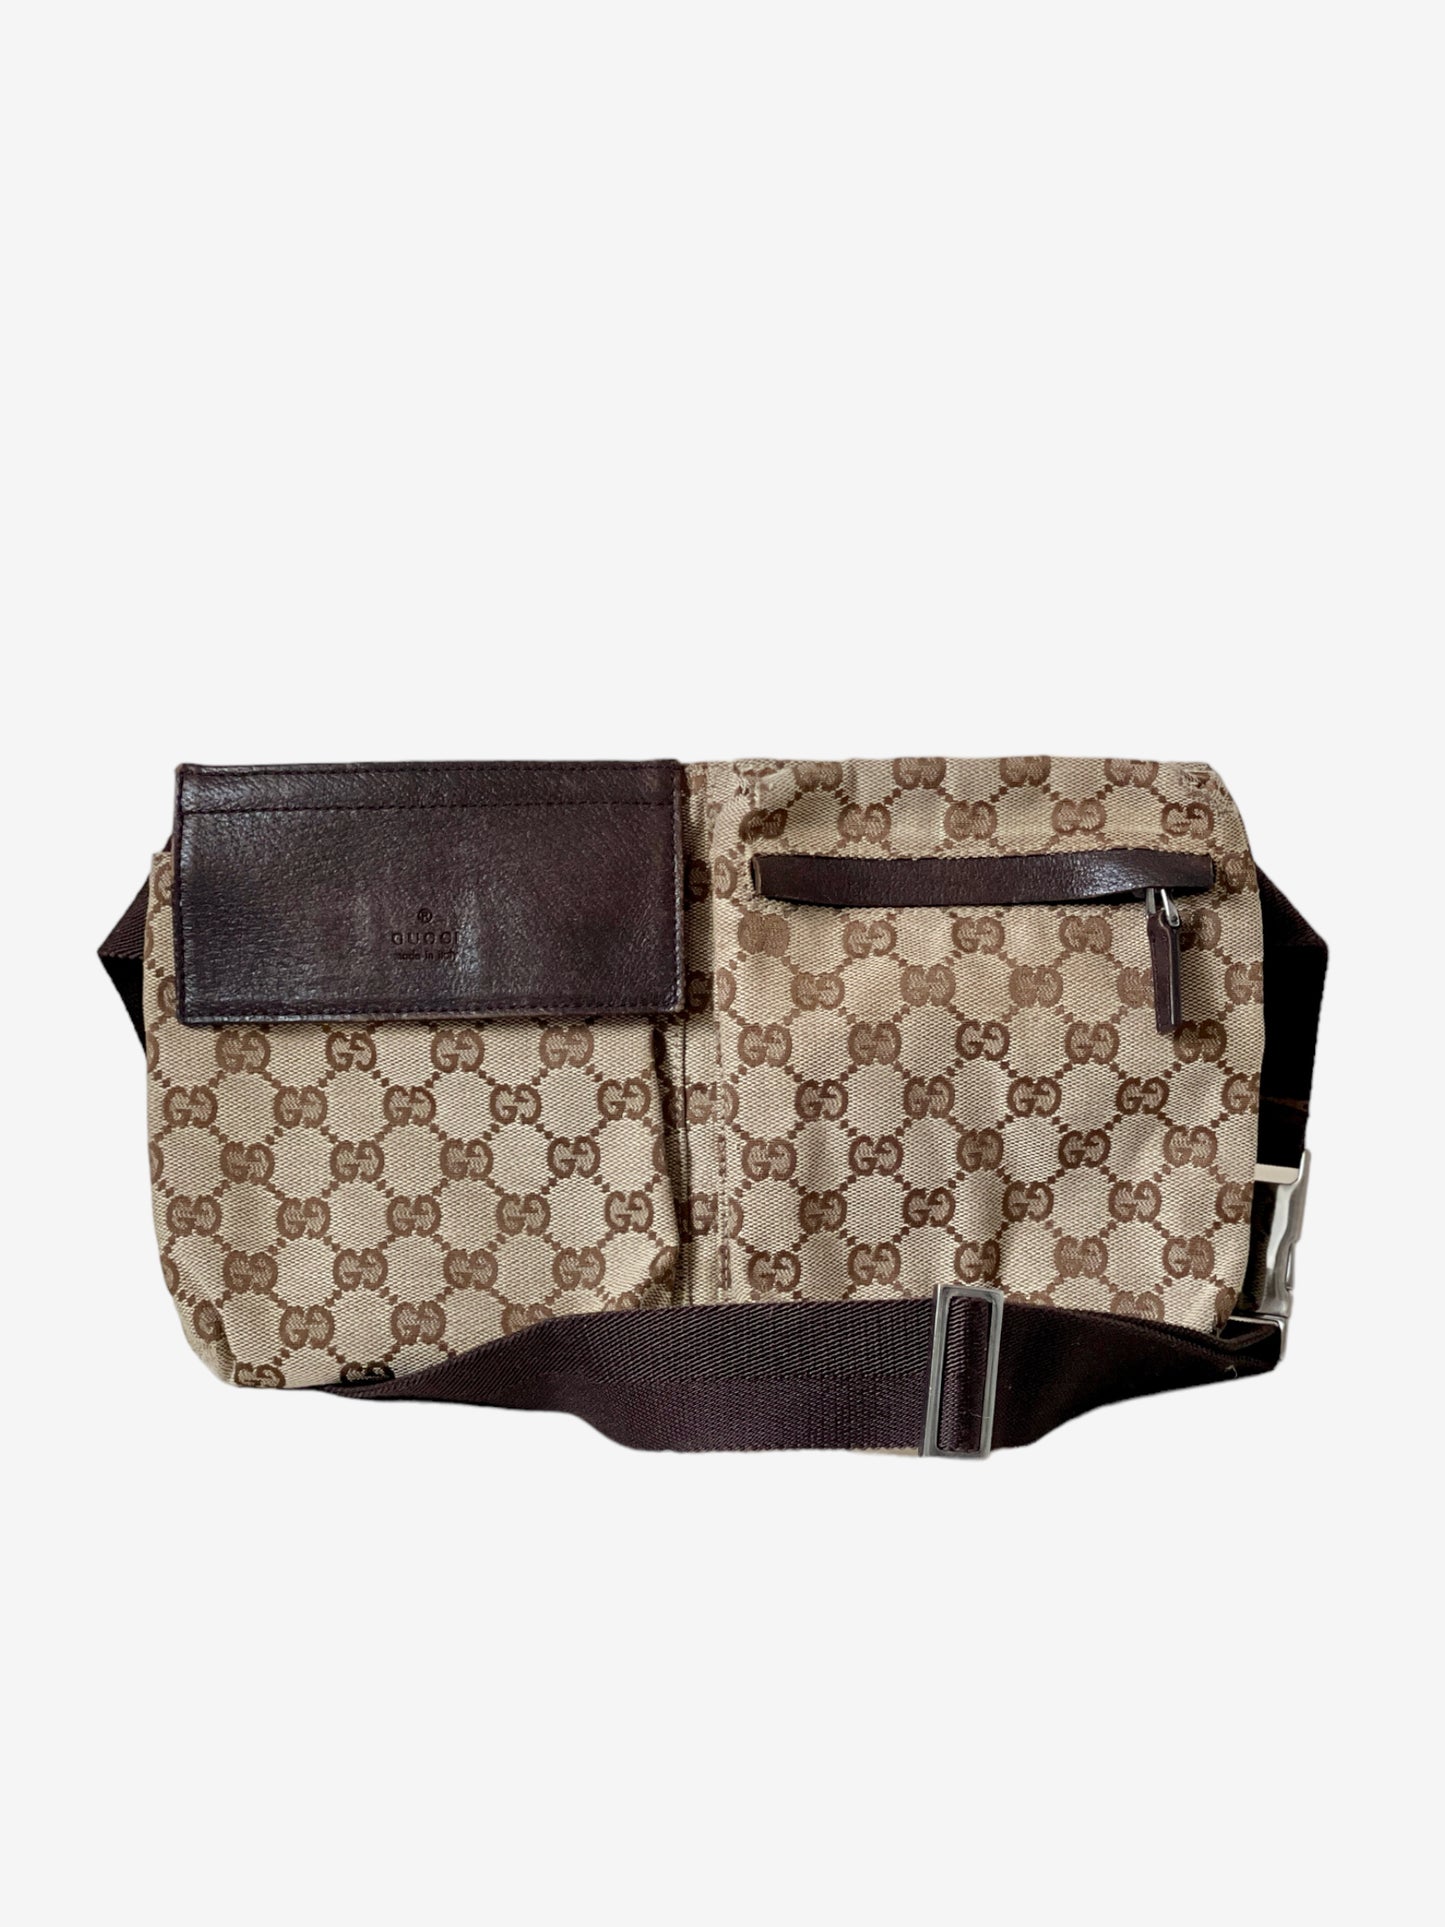 Vintage Gucci belt bag